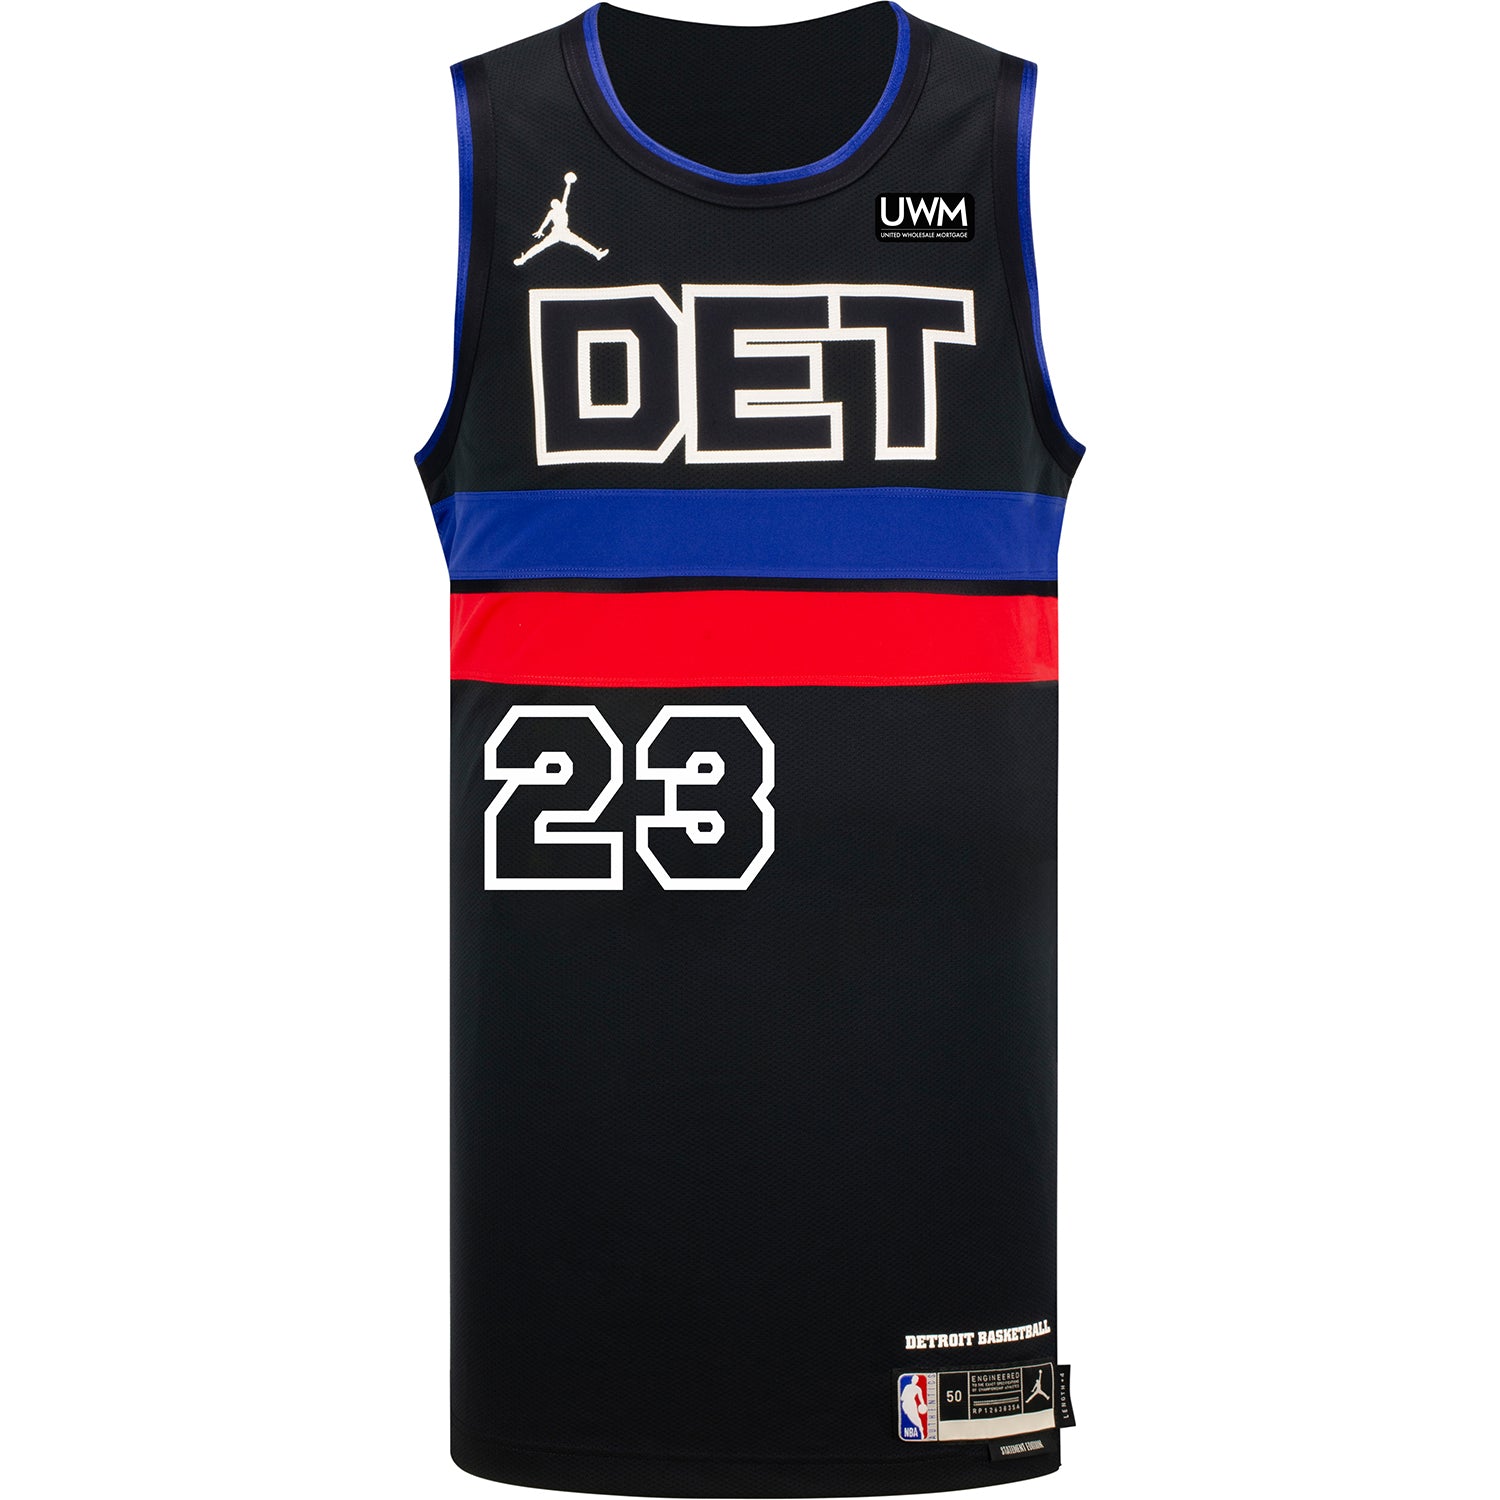 JADEN IVEY Autographed Detroit Pistons White Nike Swingman Jersey